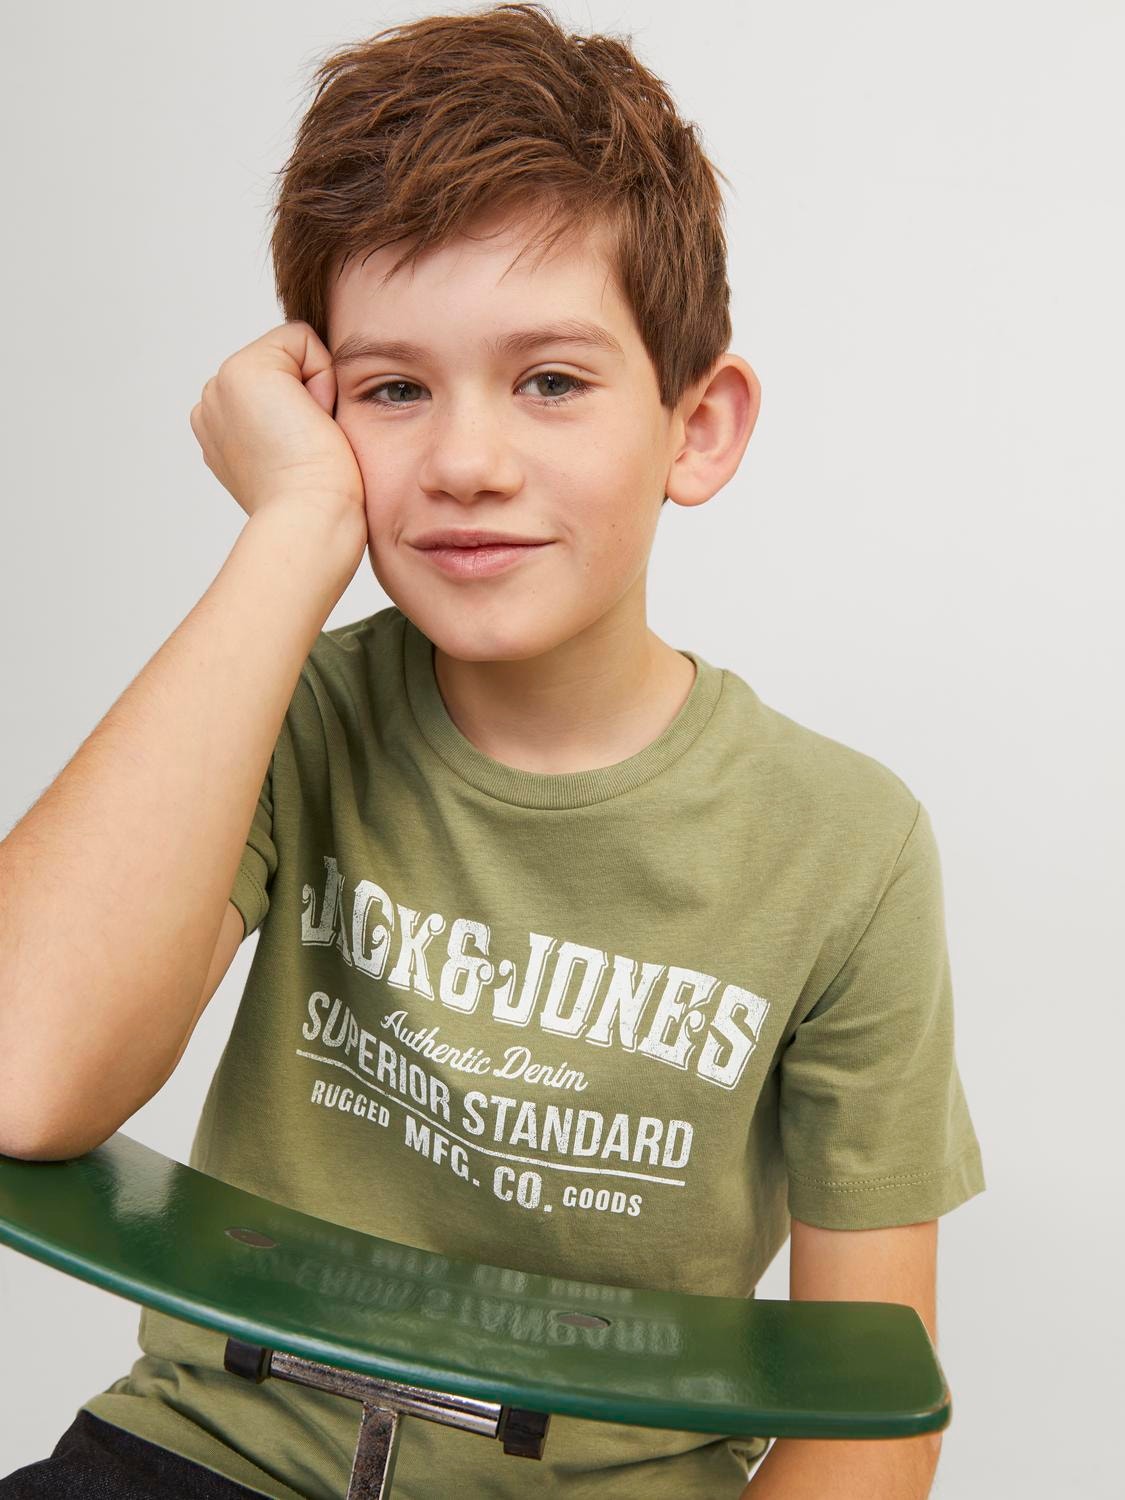 Jack & Jones Gedruckt T-shirt Für jungs -Oil Green - 12237363